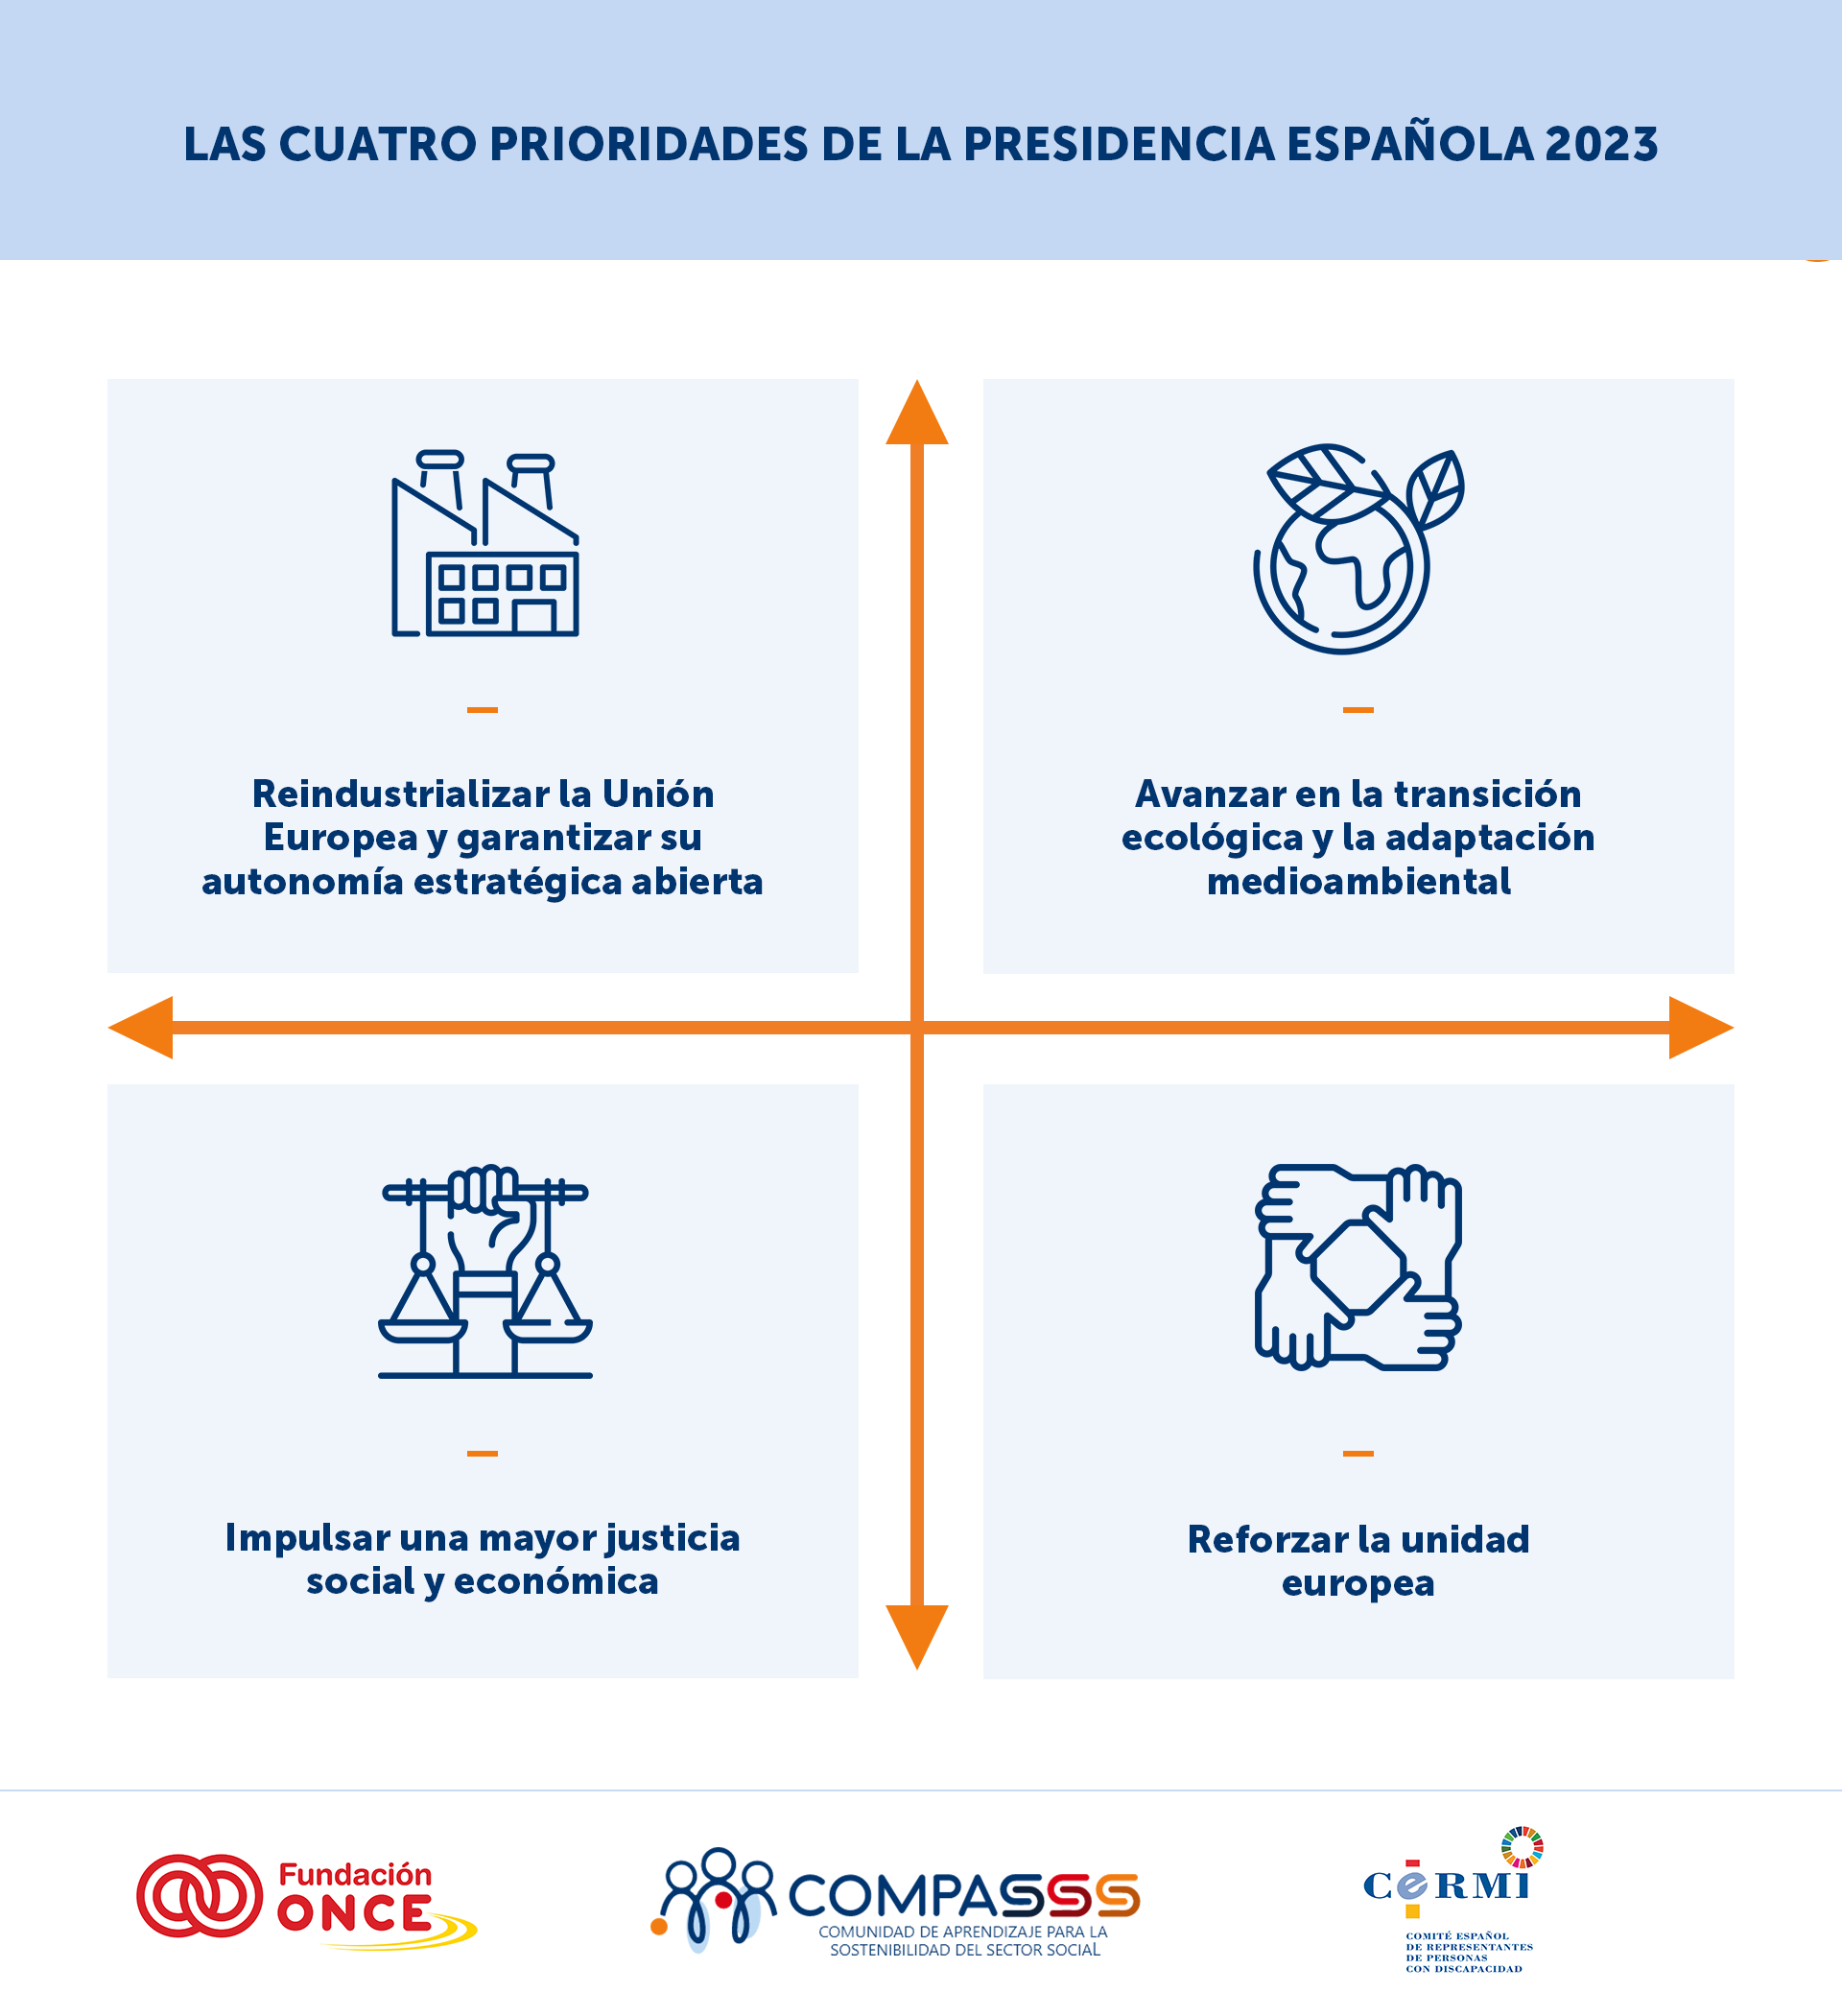 Diseño en el que aparecen las 4 prioridades de la Presidencia española 2023